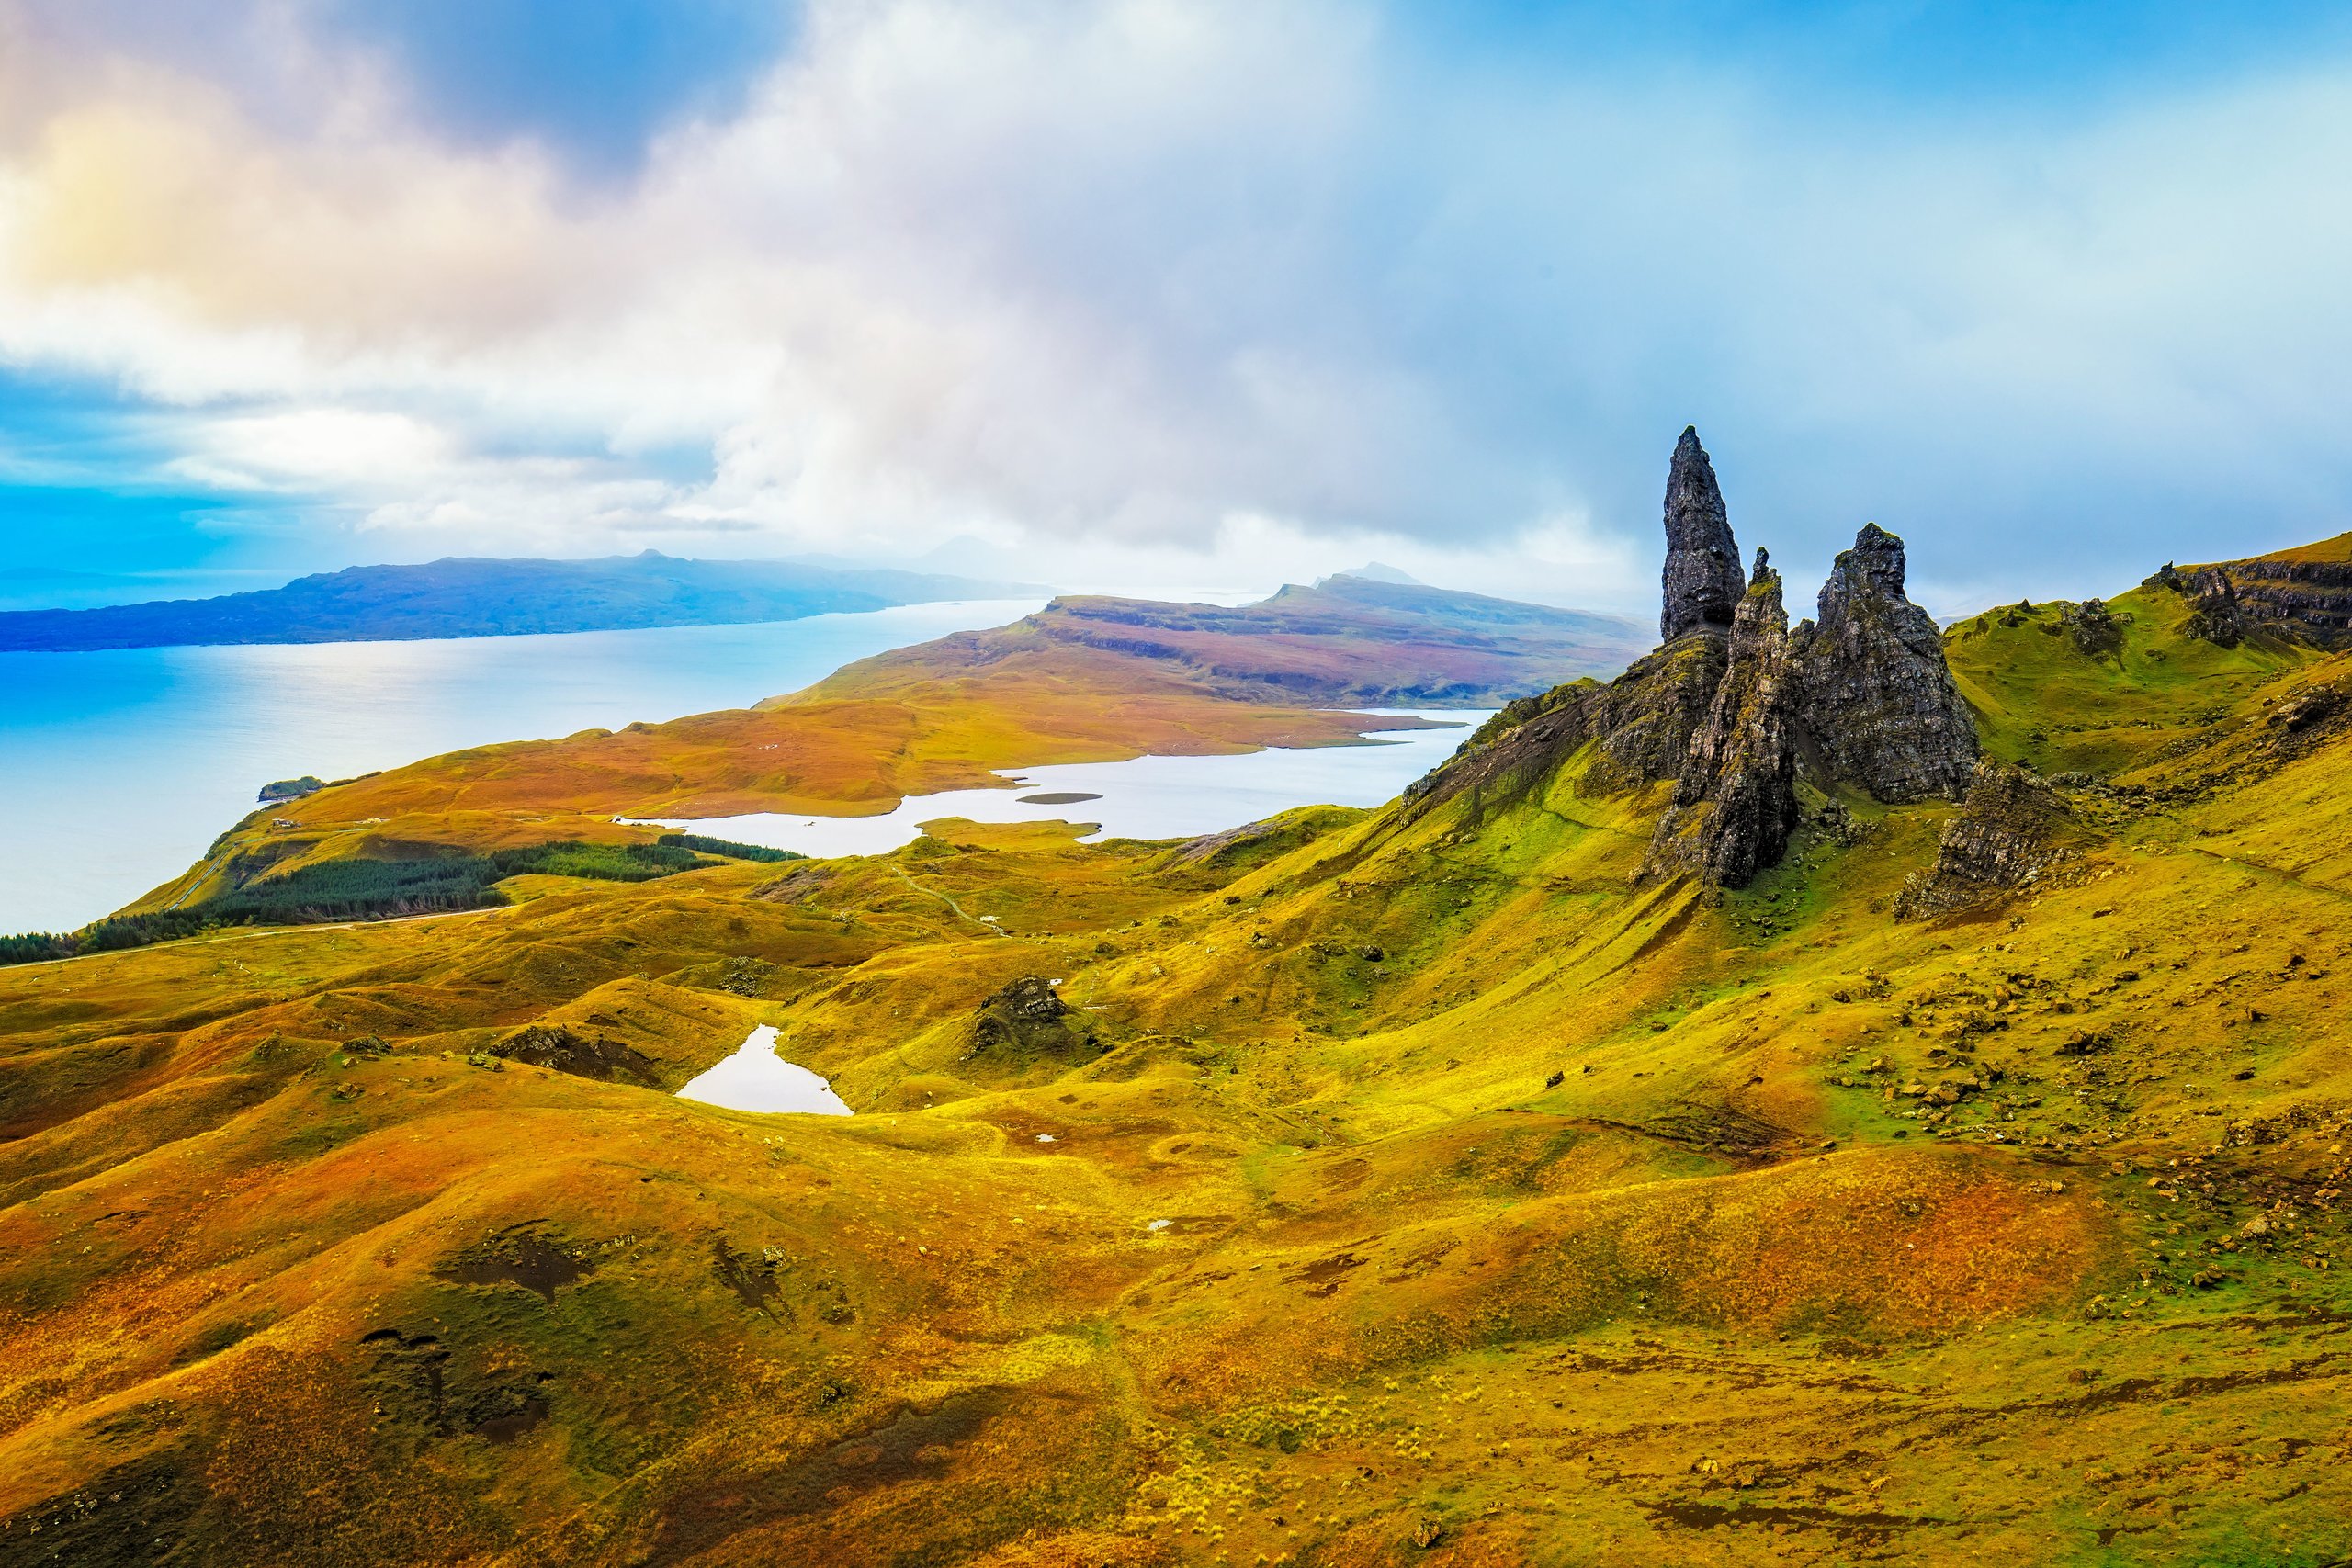 Scotland is beautiful. Остров Скай, Шотландия (Isle of Skye). Остров Скай внутренние Гебриды. Остров Скай (Гебриды, Шотландия).. Старик Сторр - остров Скай, Шотландия.